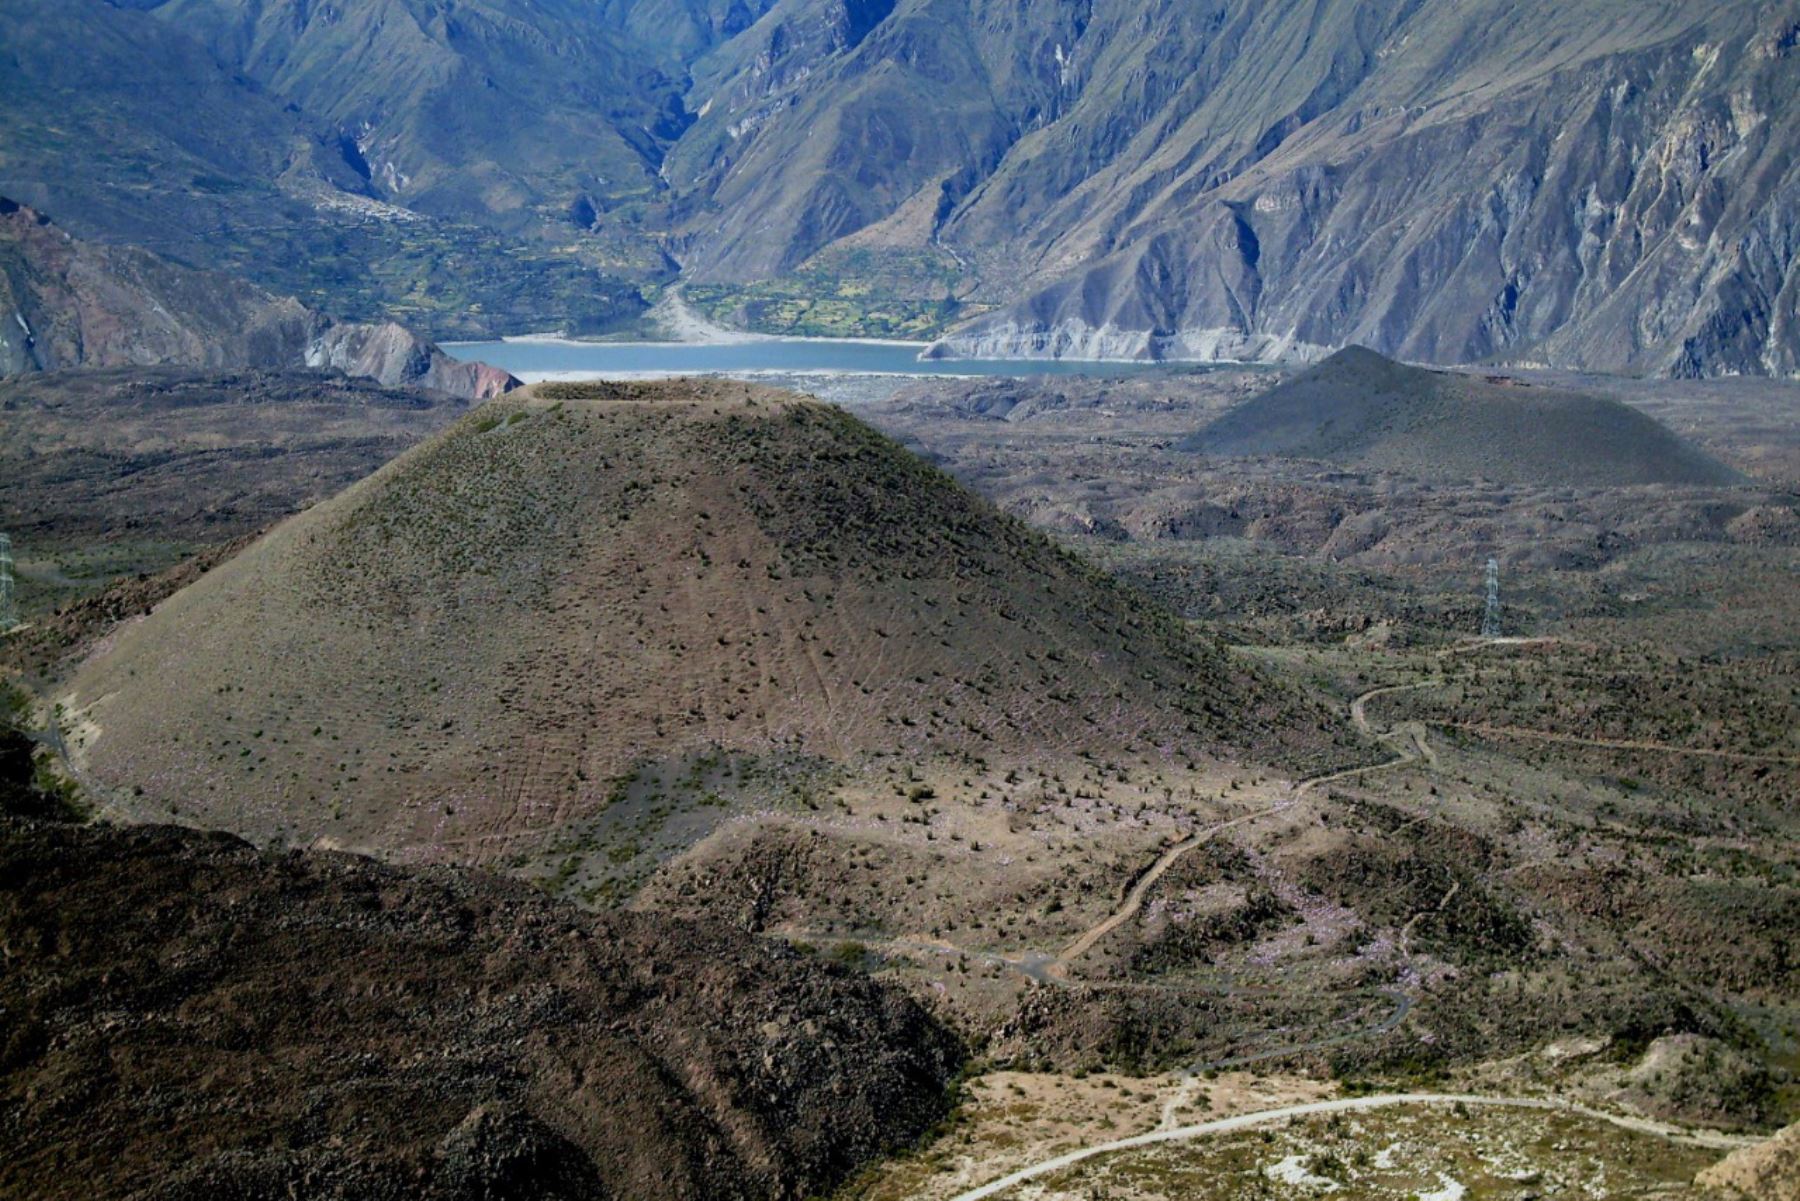 El primer geoparque mundial en Perú " Colca y volcanes de Andagua" recibió esta distinción de la Unesco en 2019.